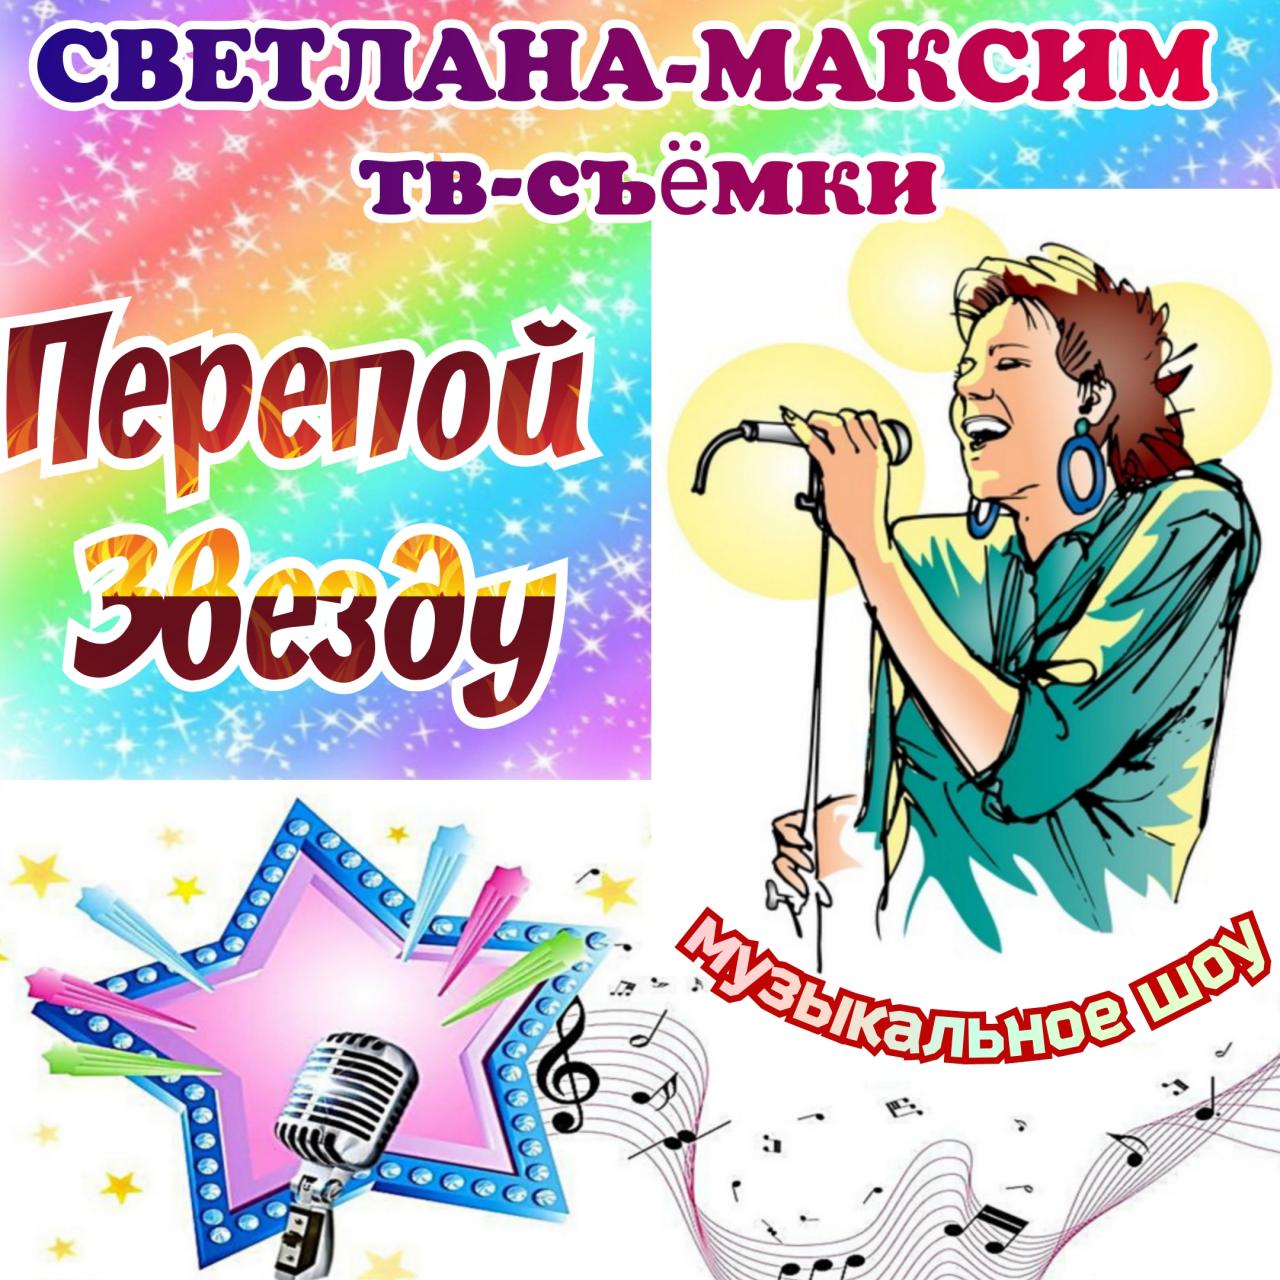 22, 23, 24 апреля музыкальное шоу "ПЕРЕПОЙ ЗВЕЗДУ".